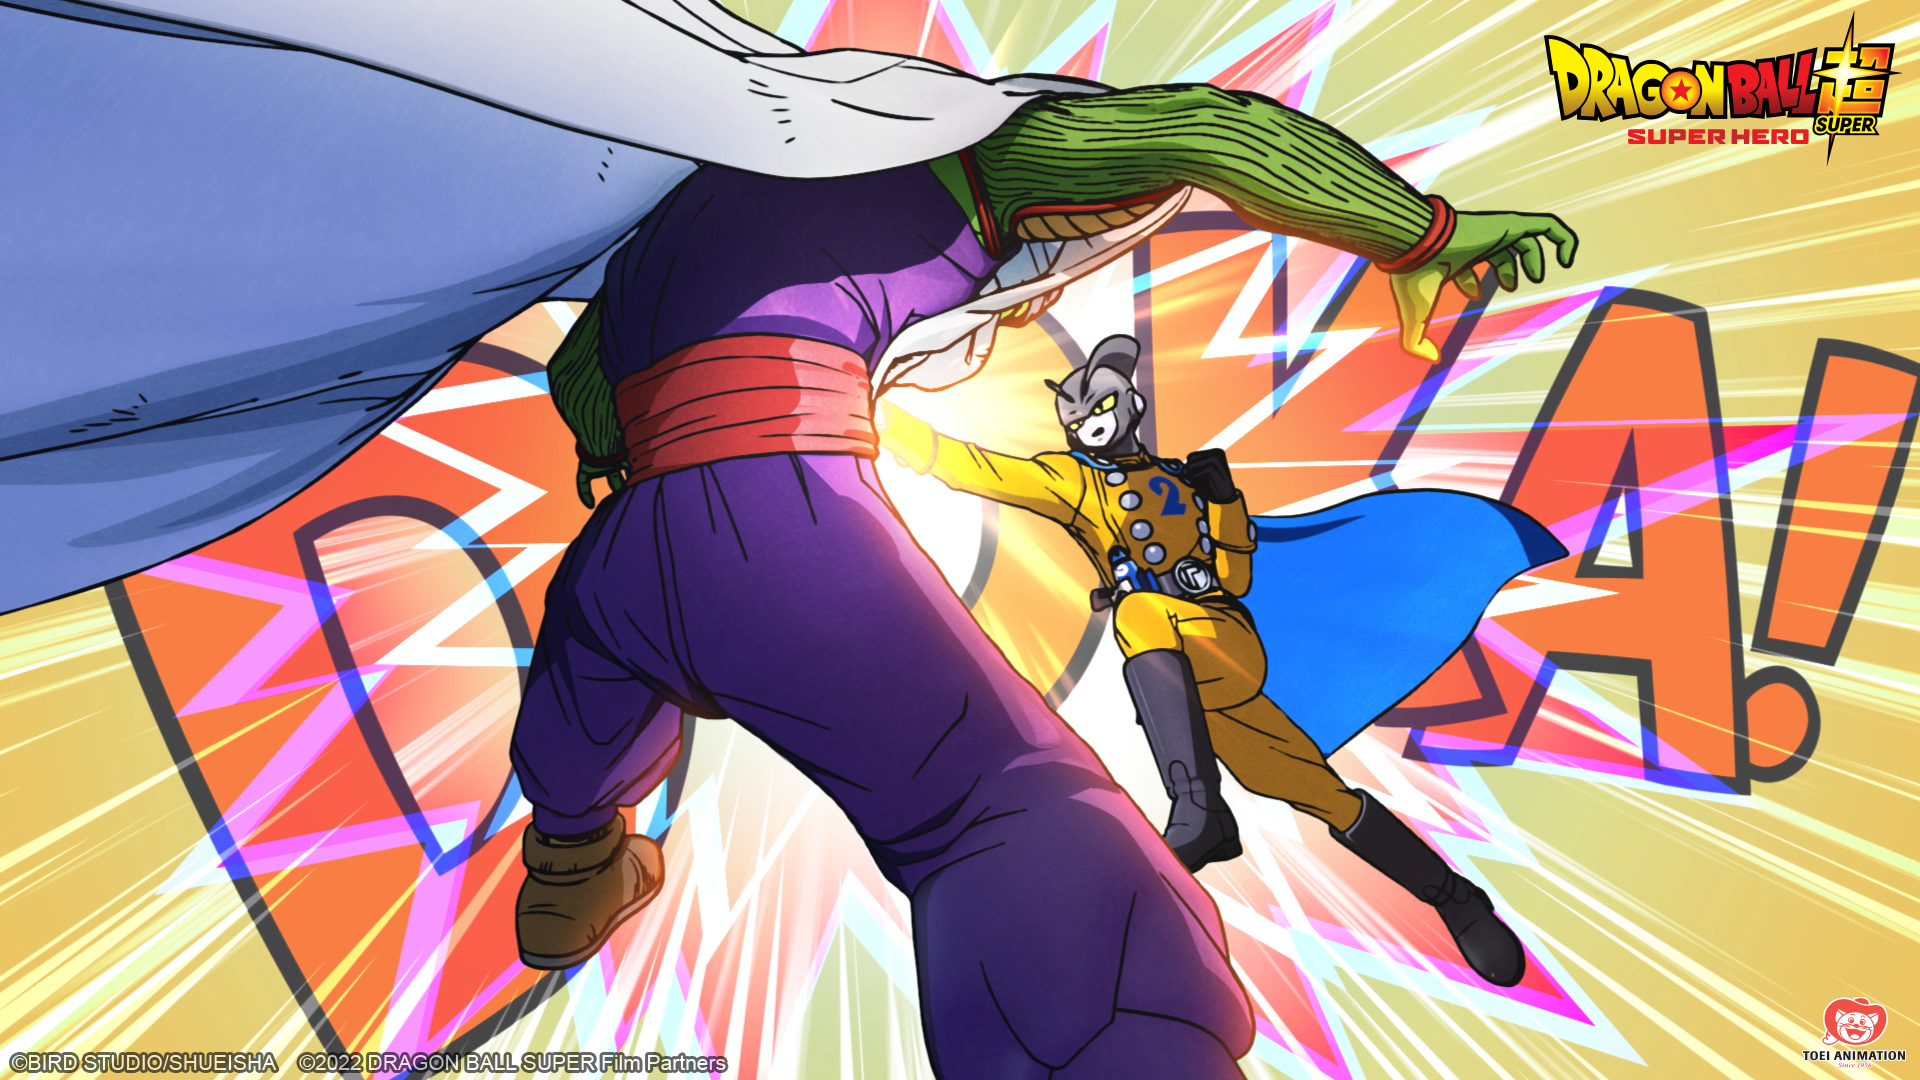 Piccolo and Gamma 2 engaged in combat in a scene in 'Dragon Ball Super: Super Hero'